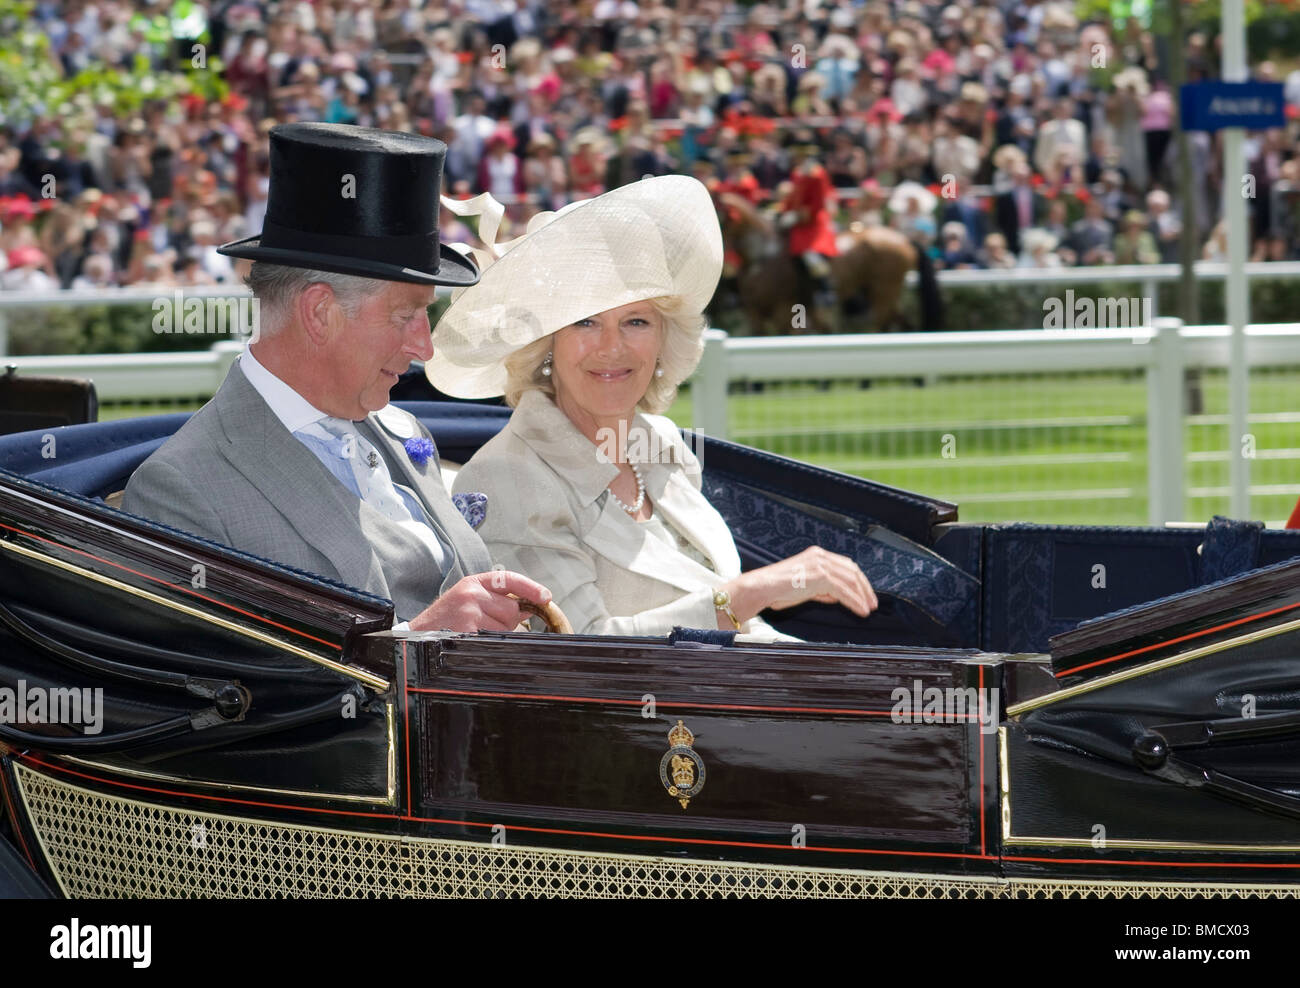 Le Prince Charles et Camilla duchesse de Cornouailles arrivent dans un chariot pour le Royal Ascot réunion de courses en 2009 Banque D'Images